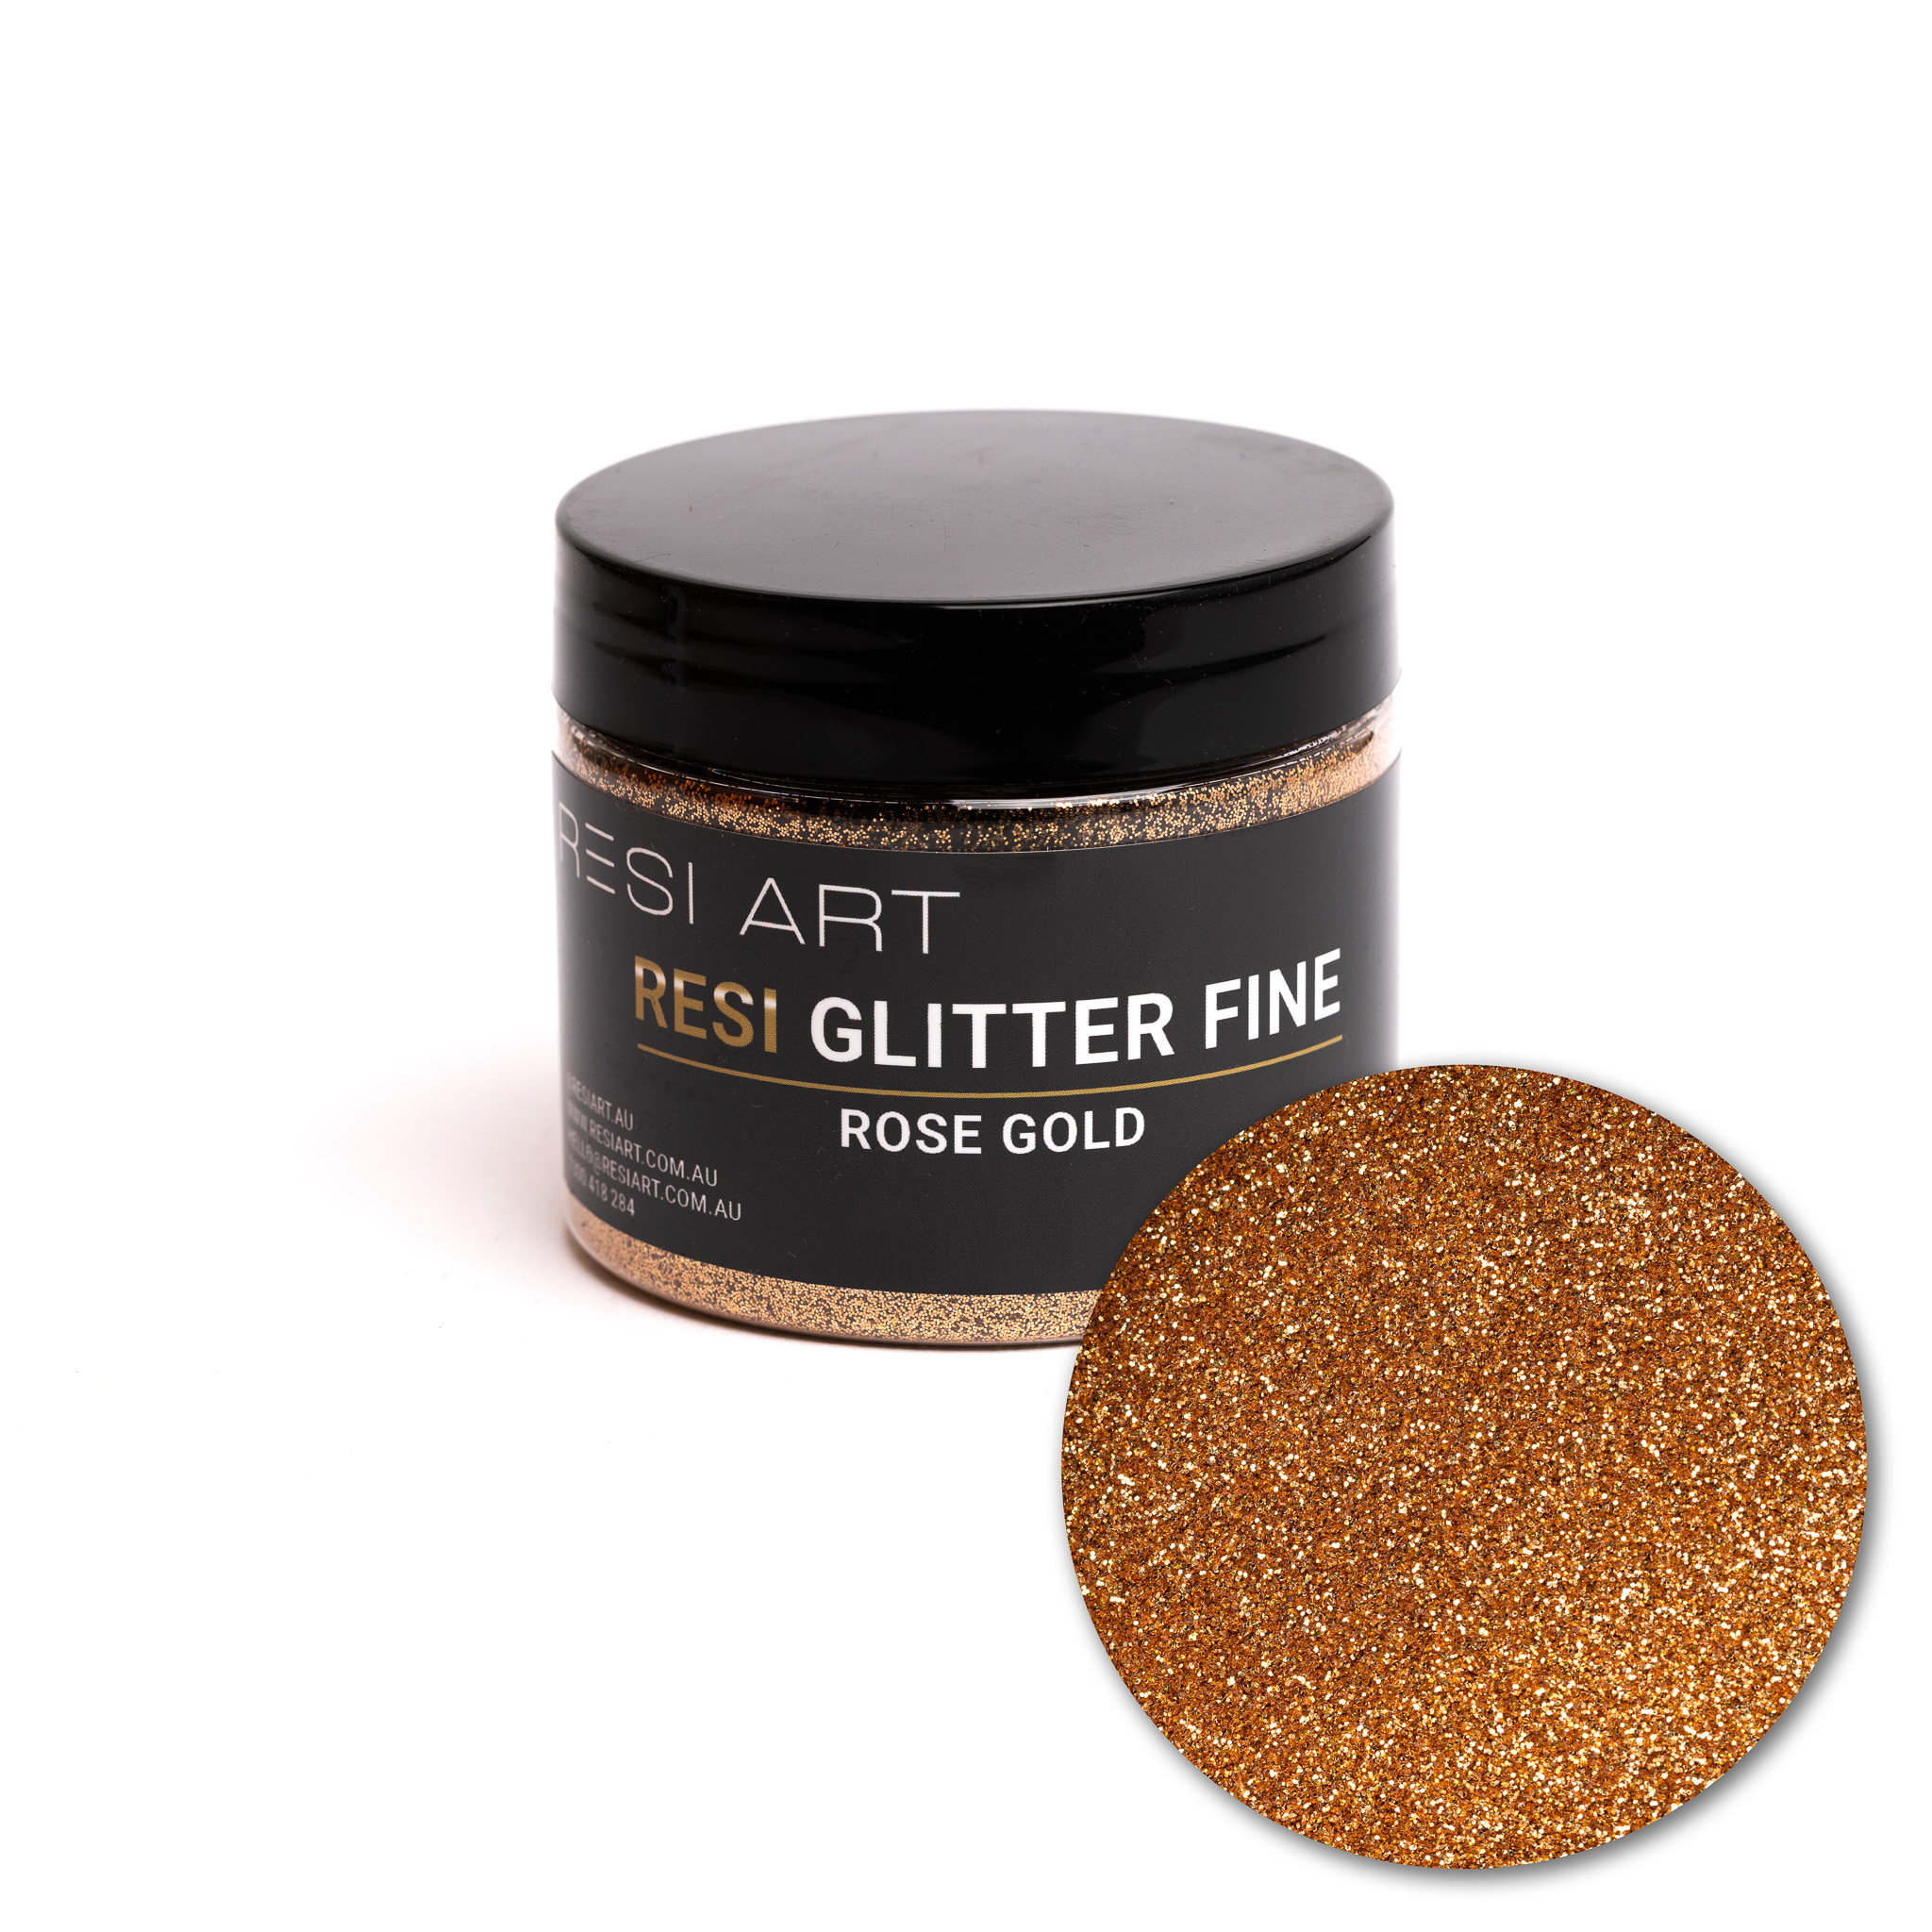 Rose Gold 100g - Resi Glitter Fine